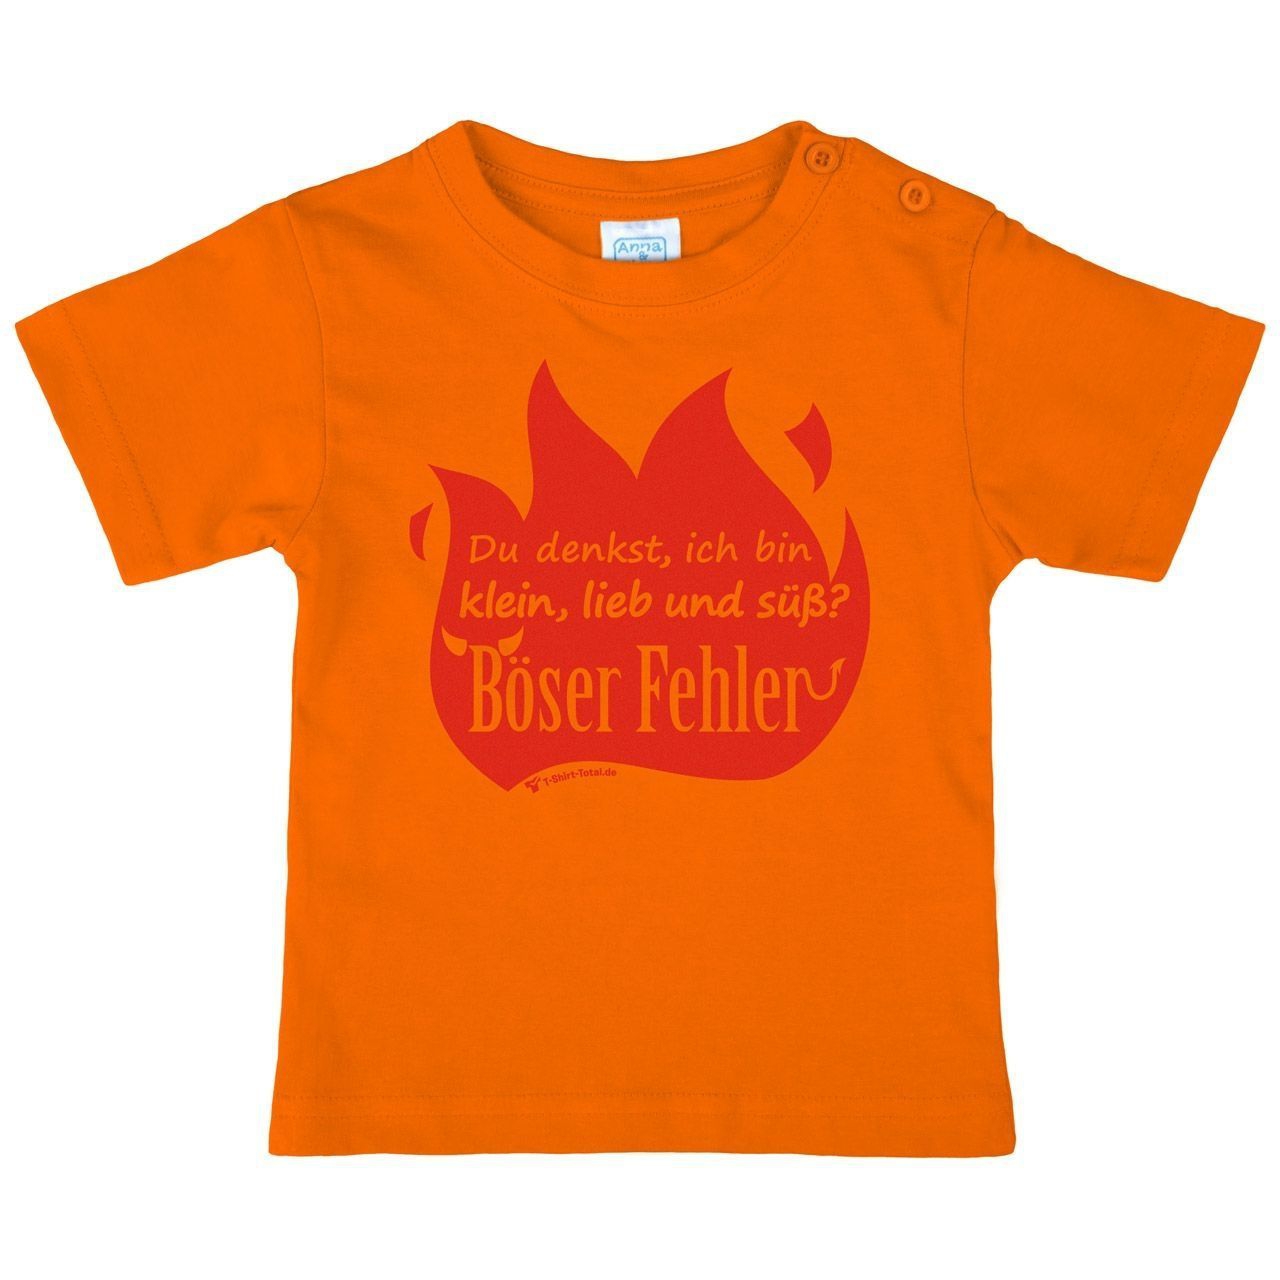 Böser Fehler Kinder T-Shirt orange 80 / 86